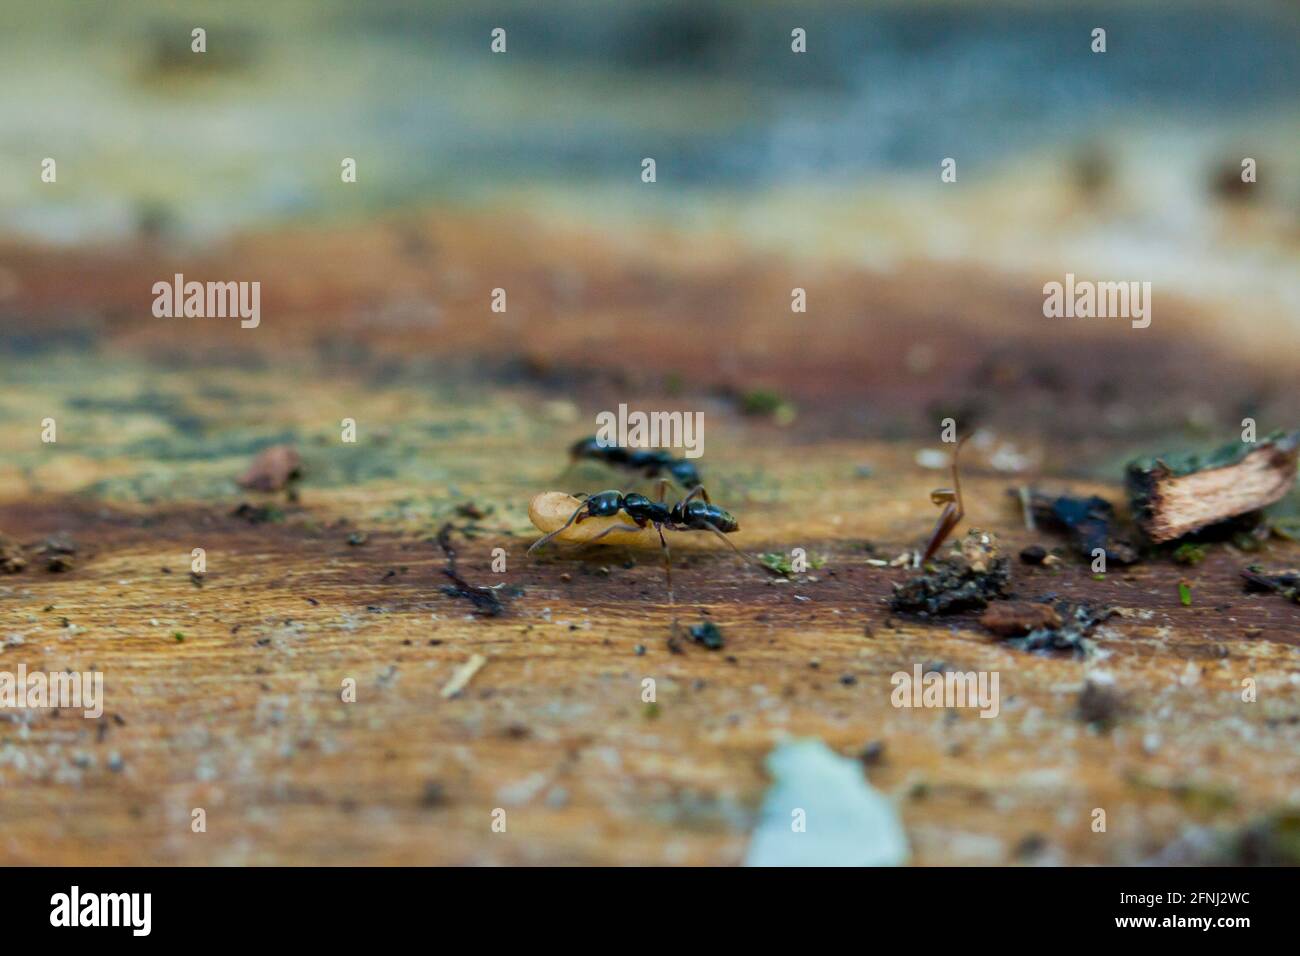 Larve mobile du menuisier noir (Camponotus pennsylvanicus) - Etats-Unis Banque D'Images